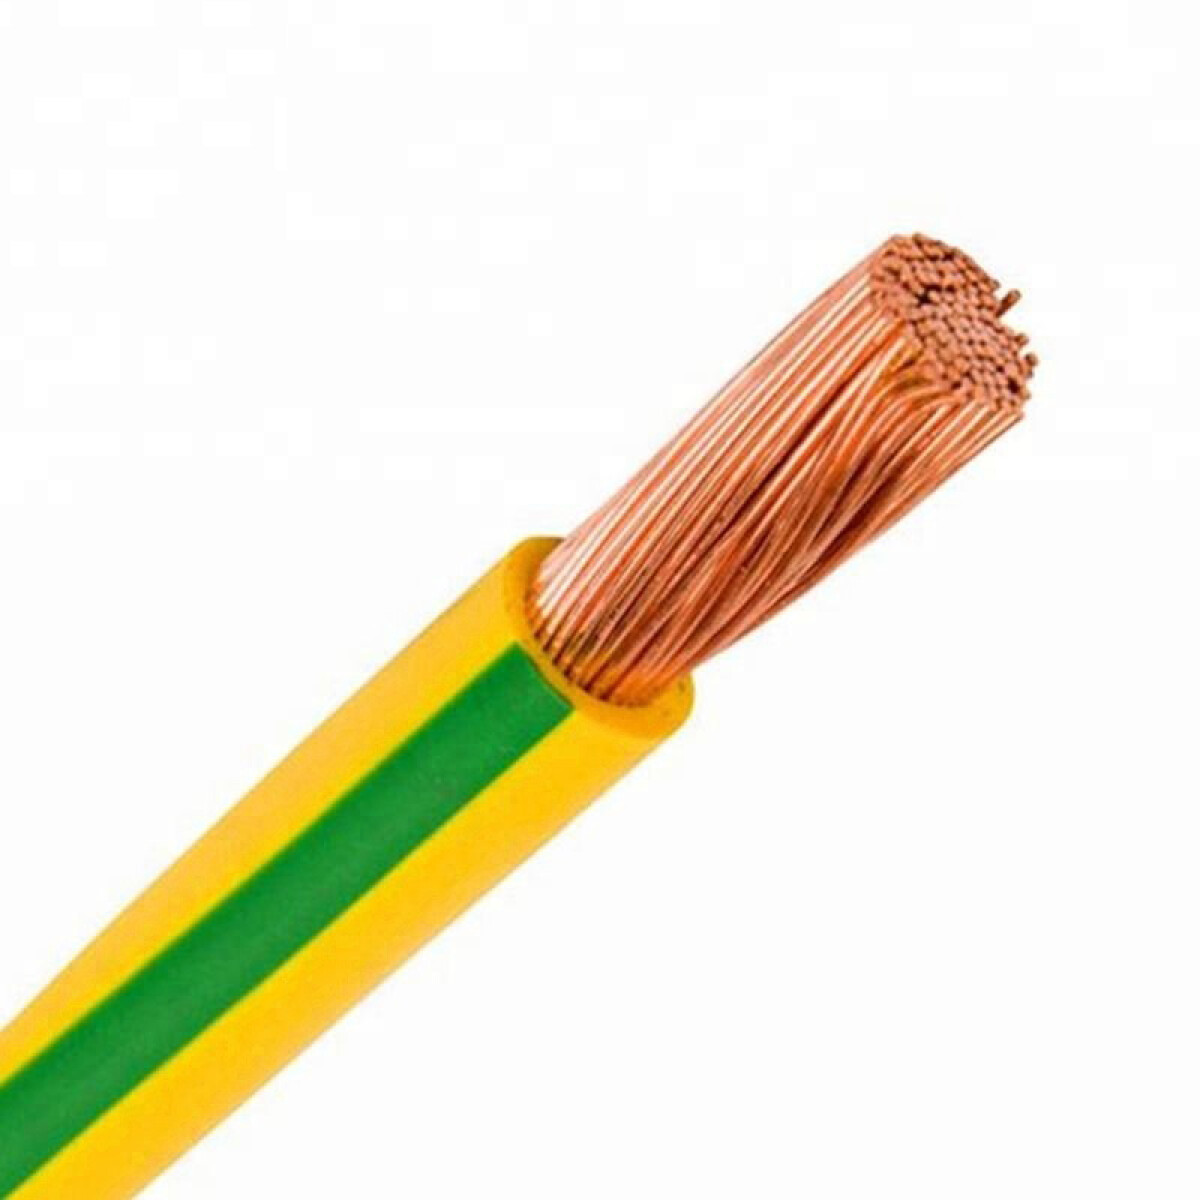 Cable de cobre flexible 16mm² am./verde, 100 mts. - C94377 